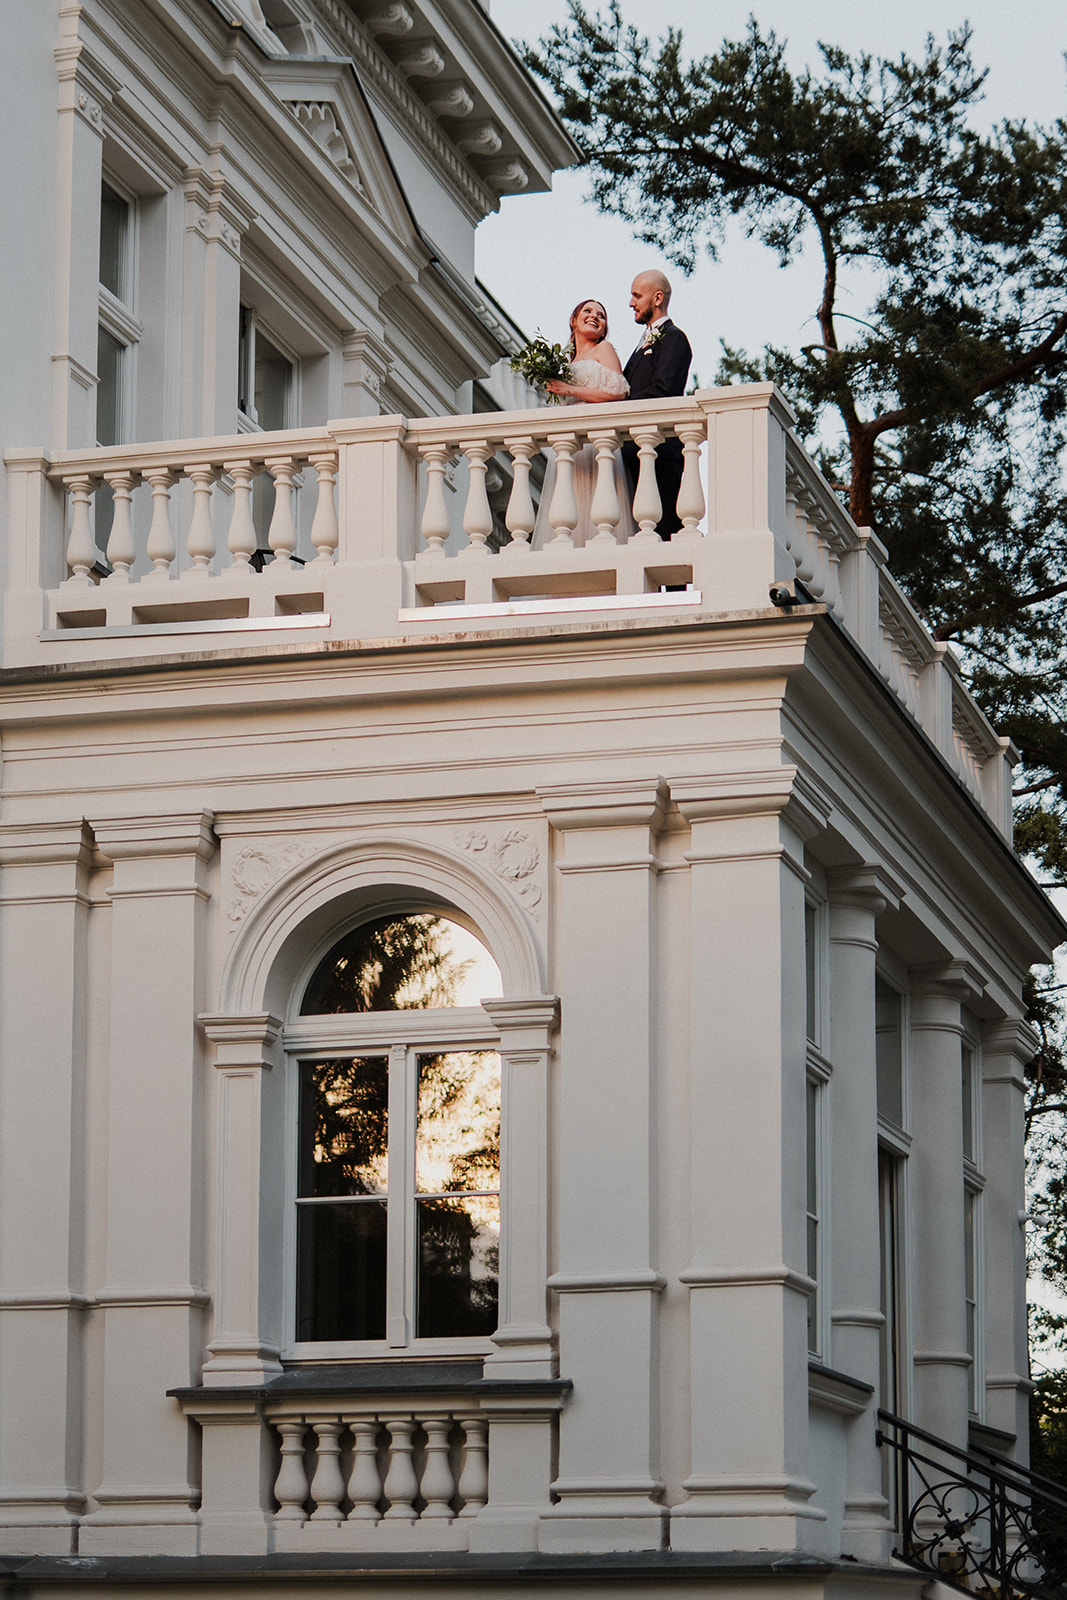 Para młoda pozuje na tarasie Starej Biblioteki we Wrocławiu podczas krótkiej sesji zdjęciowej w dniu ślubu